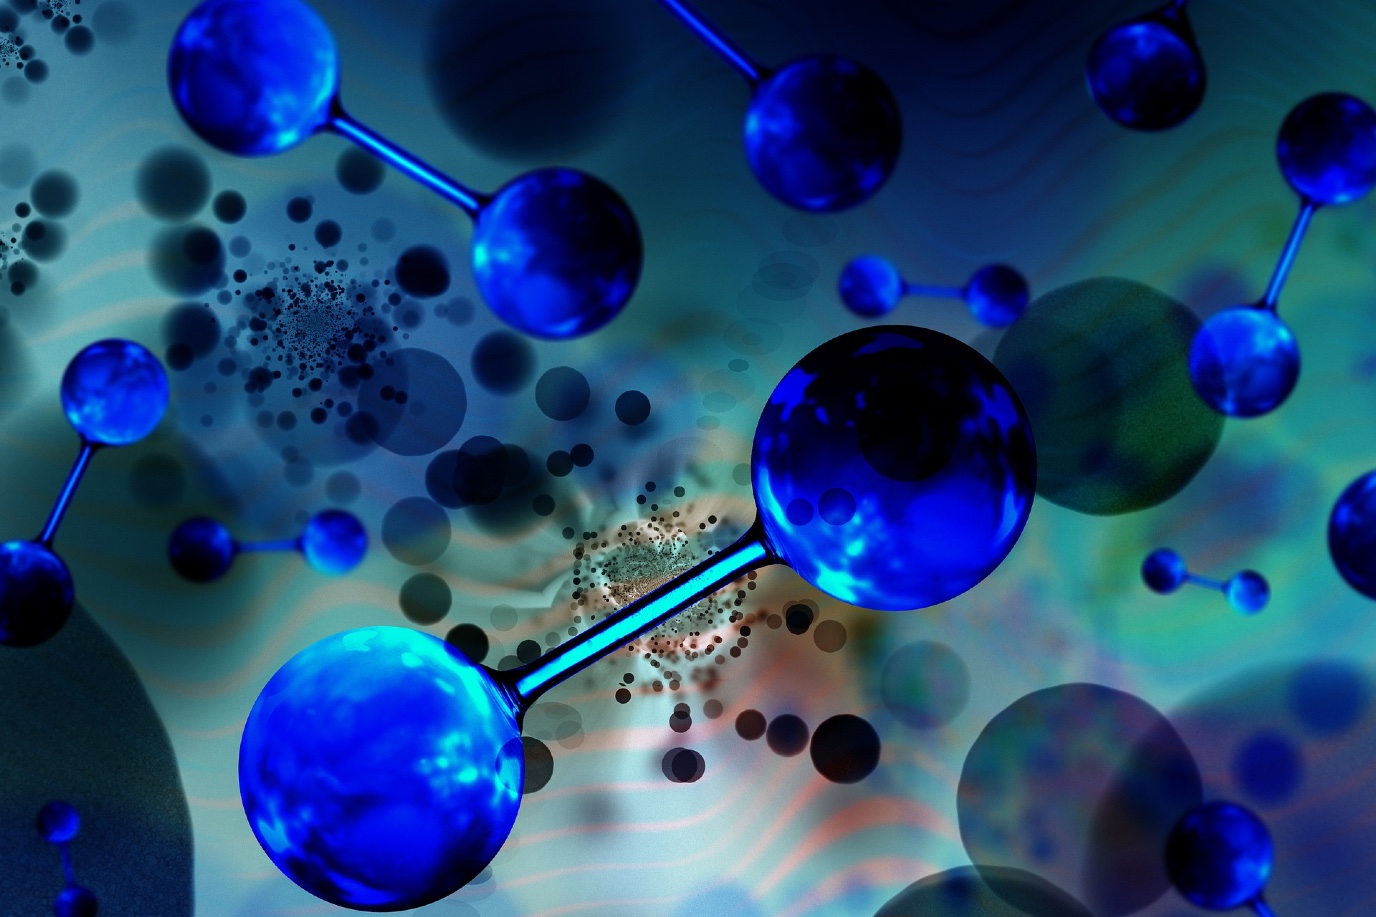 Hydrogen molecules image by Gerd Altmann / Pixabay